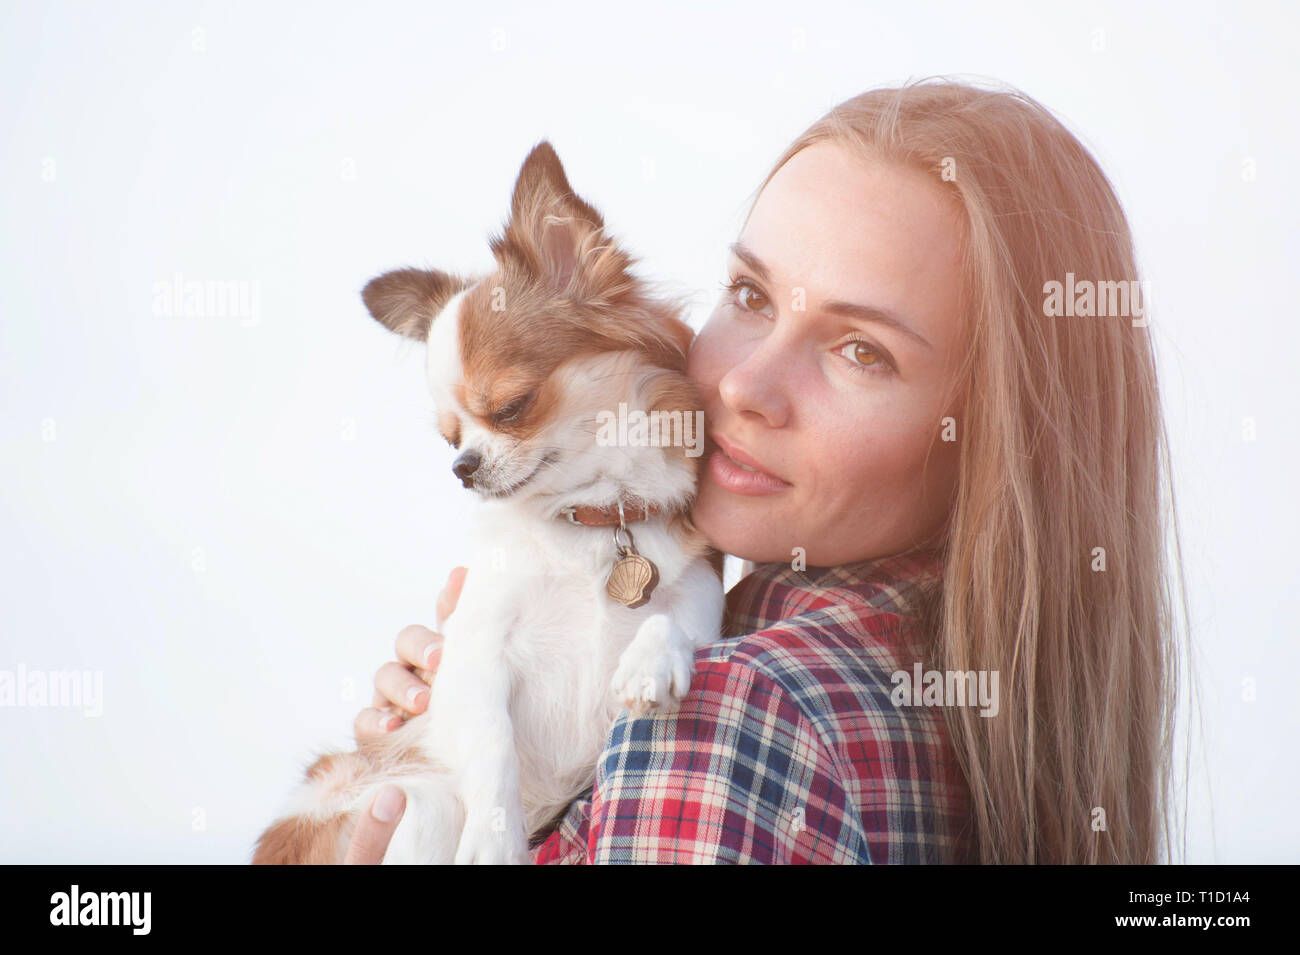 Ritratto di giovane carina ragazza con il suo piccolo chihuahua cane su sfondo lucido Foto Stock